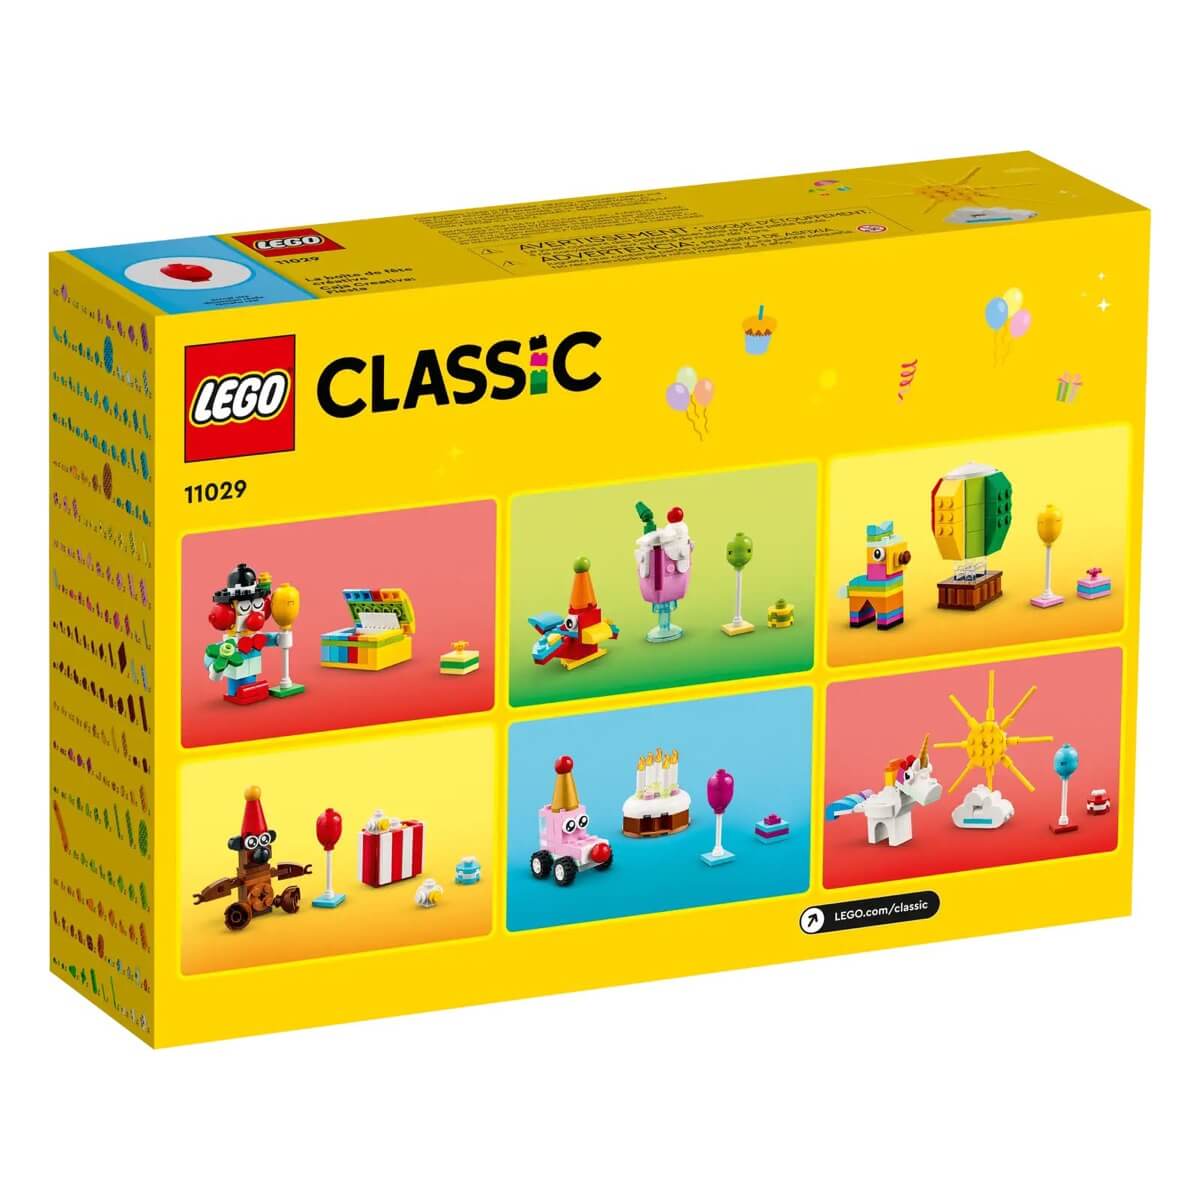 Grande boîte de briques créatives LEGO Classic, 4 ans et plus